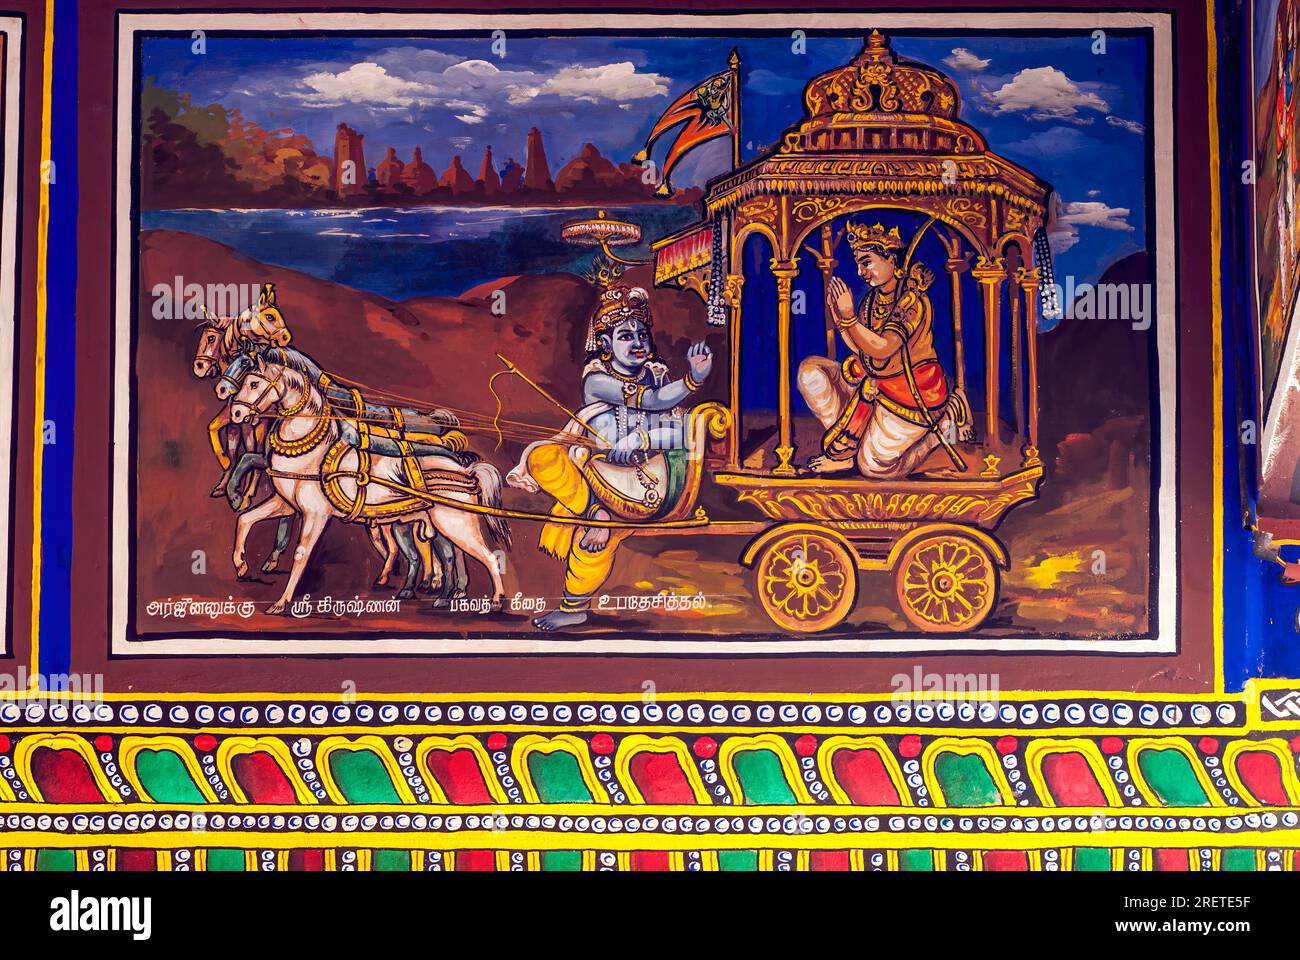 Sri Krishna prêchant la Bhagavad Gita à Arjuna, peint des peintures murales sur le plafond du temple à Iraniyur près de Karaikudi, Tamil Nadu, Inde du Sud, Inde, Asie Banque D'Images